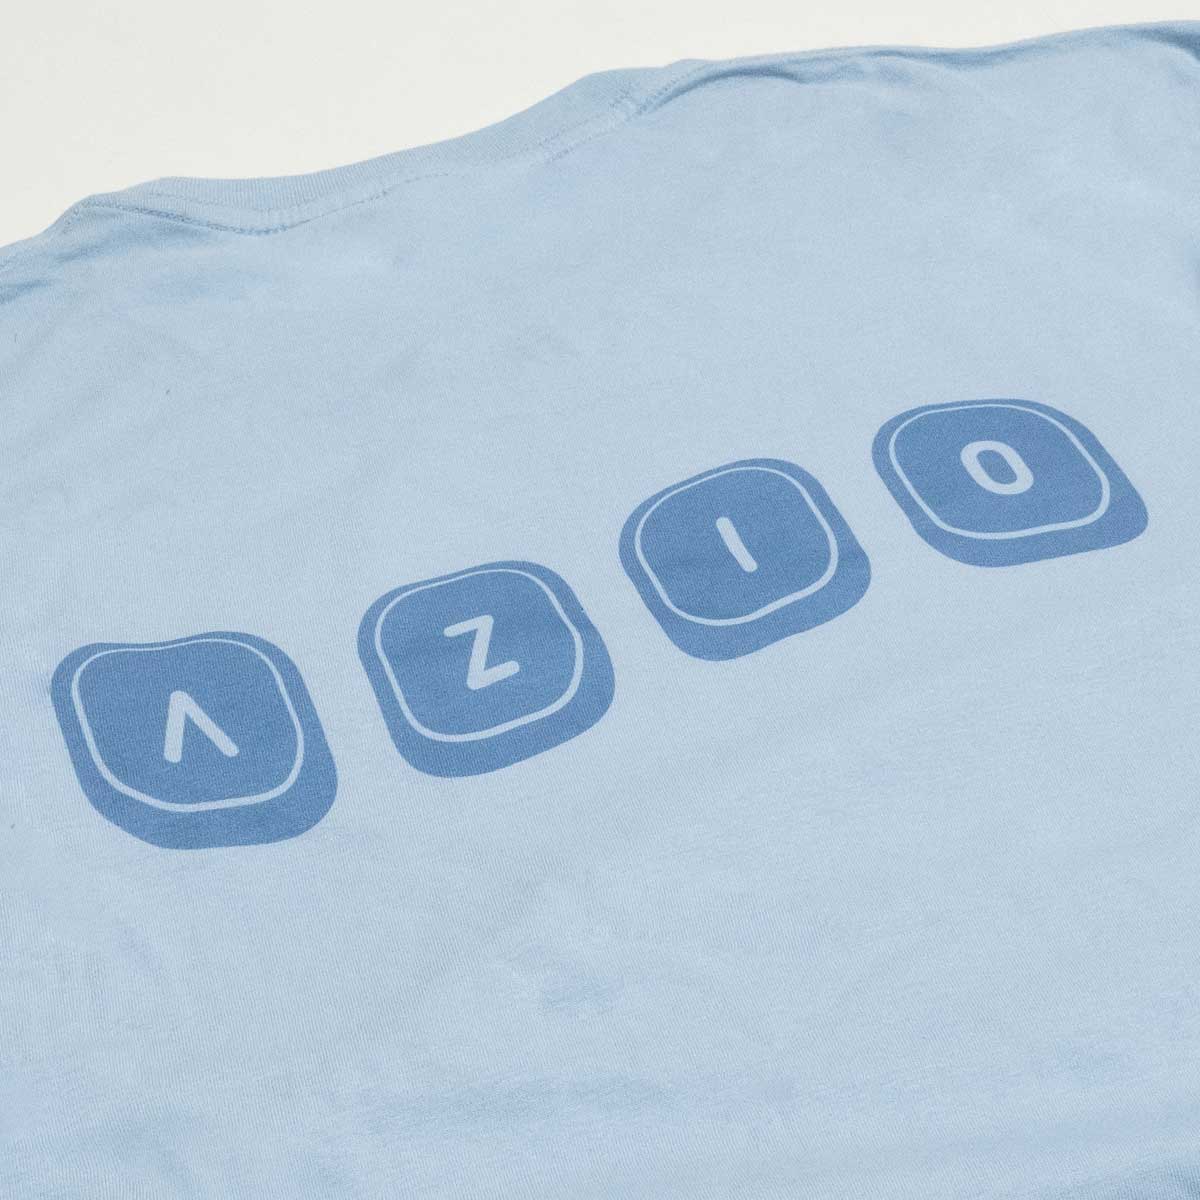 Izo-T-Shirt